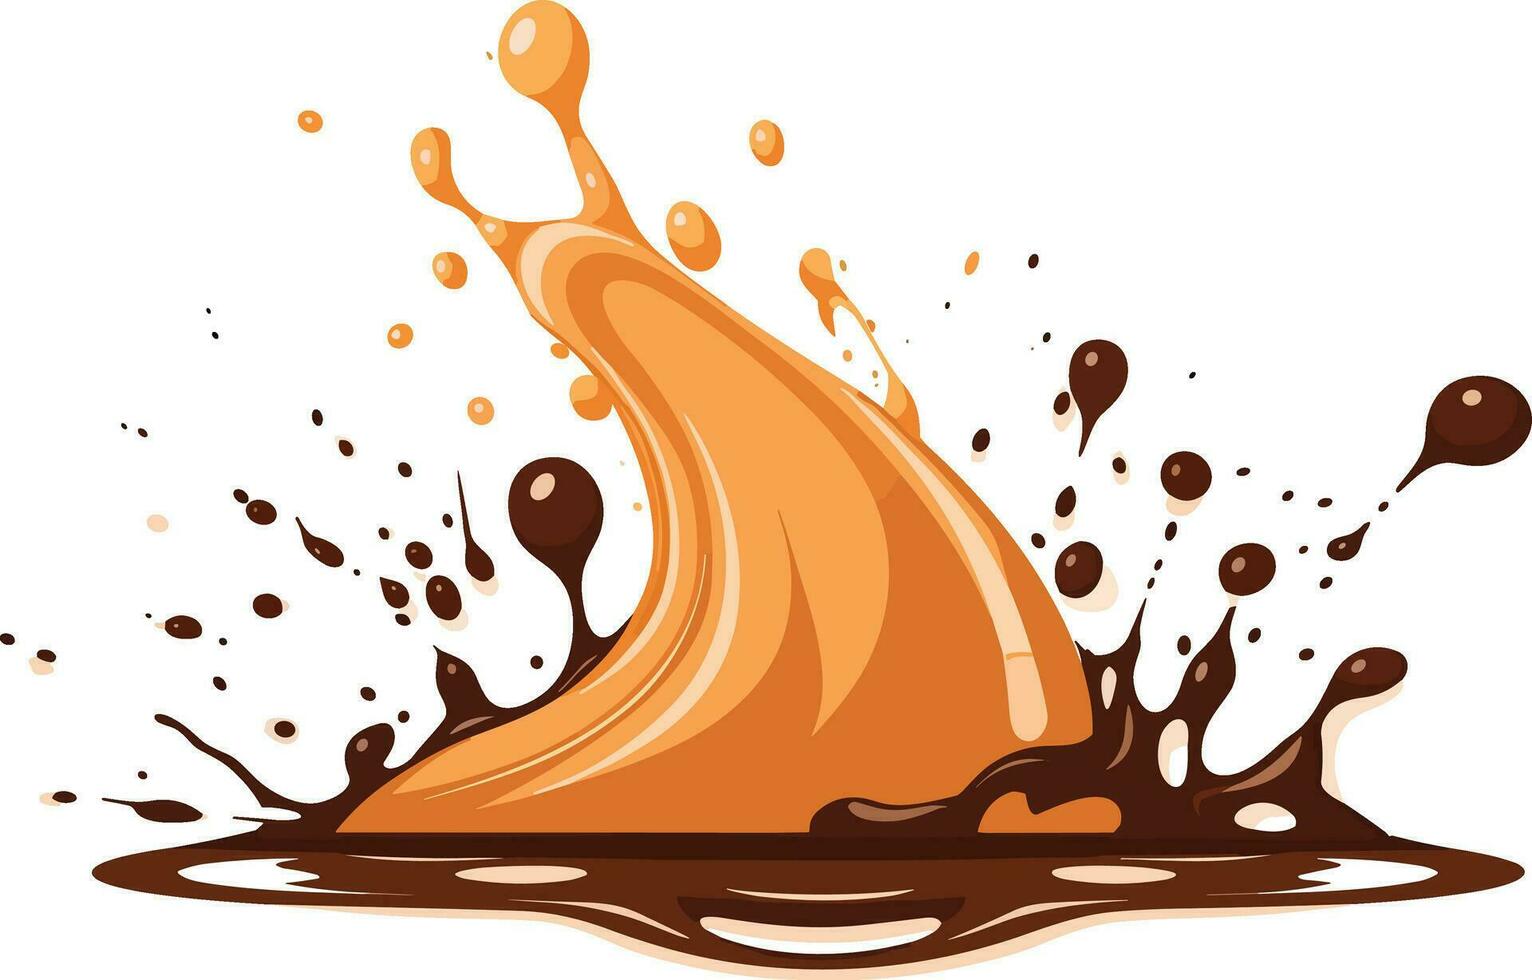 chocolate salpicaduras ilustración vector